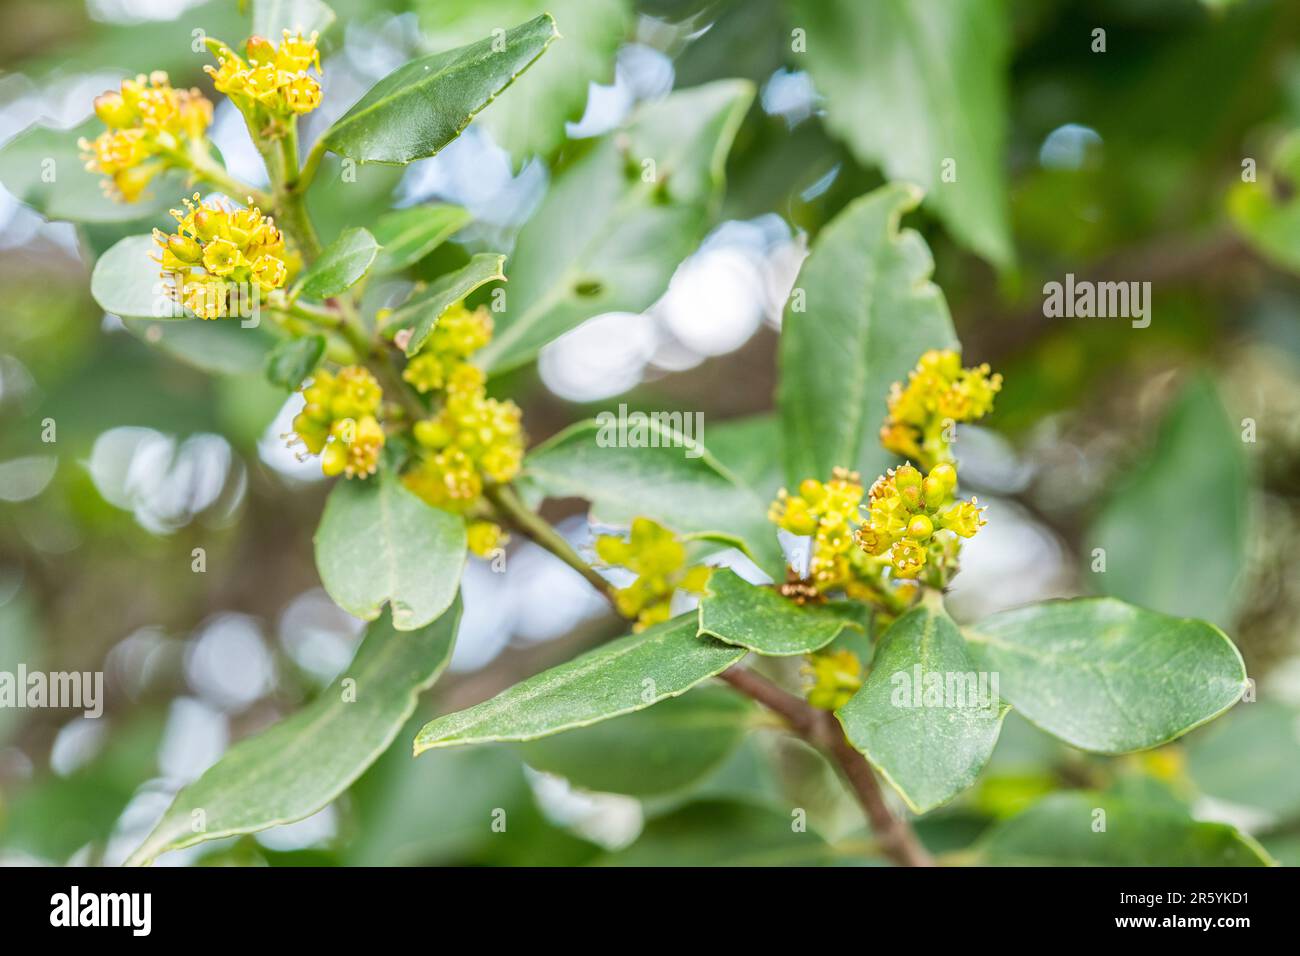 Il rhamnus alaternus è una specie di pianta fiorita appartenente alla famiglia delle rhamnaceae. Foto Stock